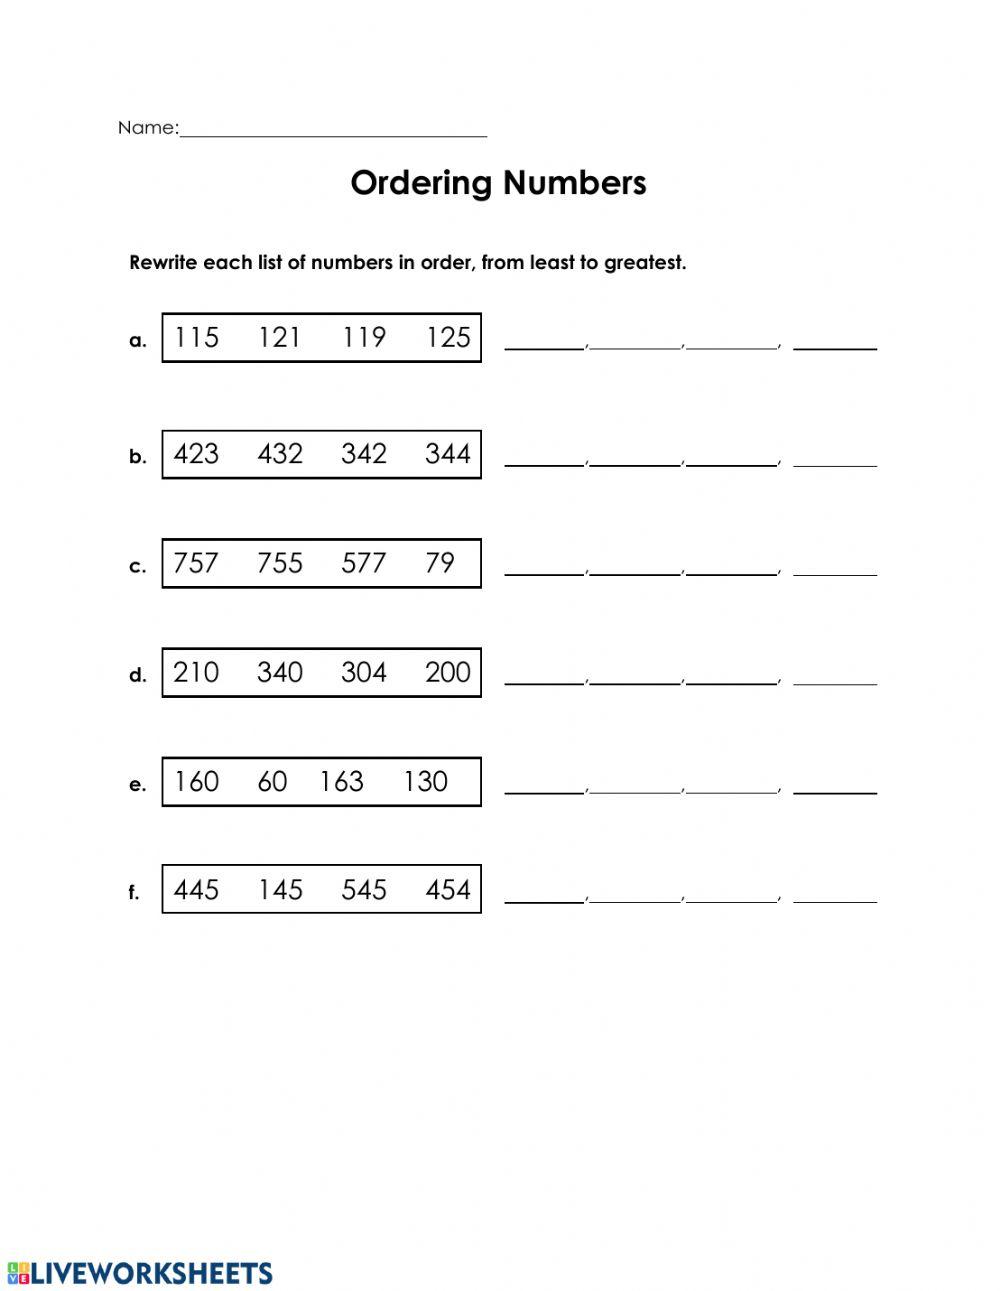 Ordering Numbers-3 digit